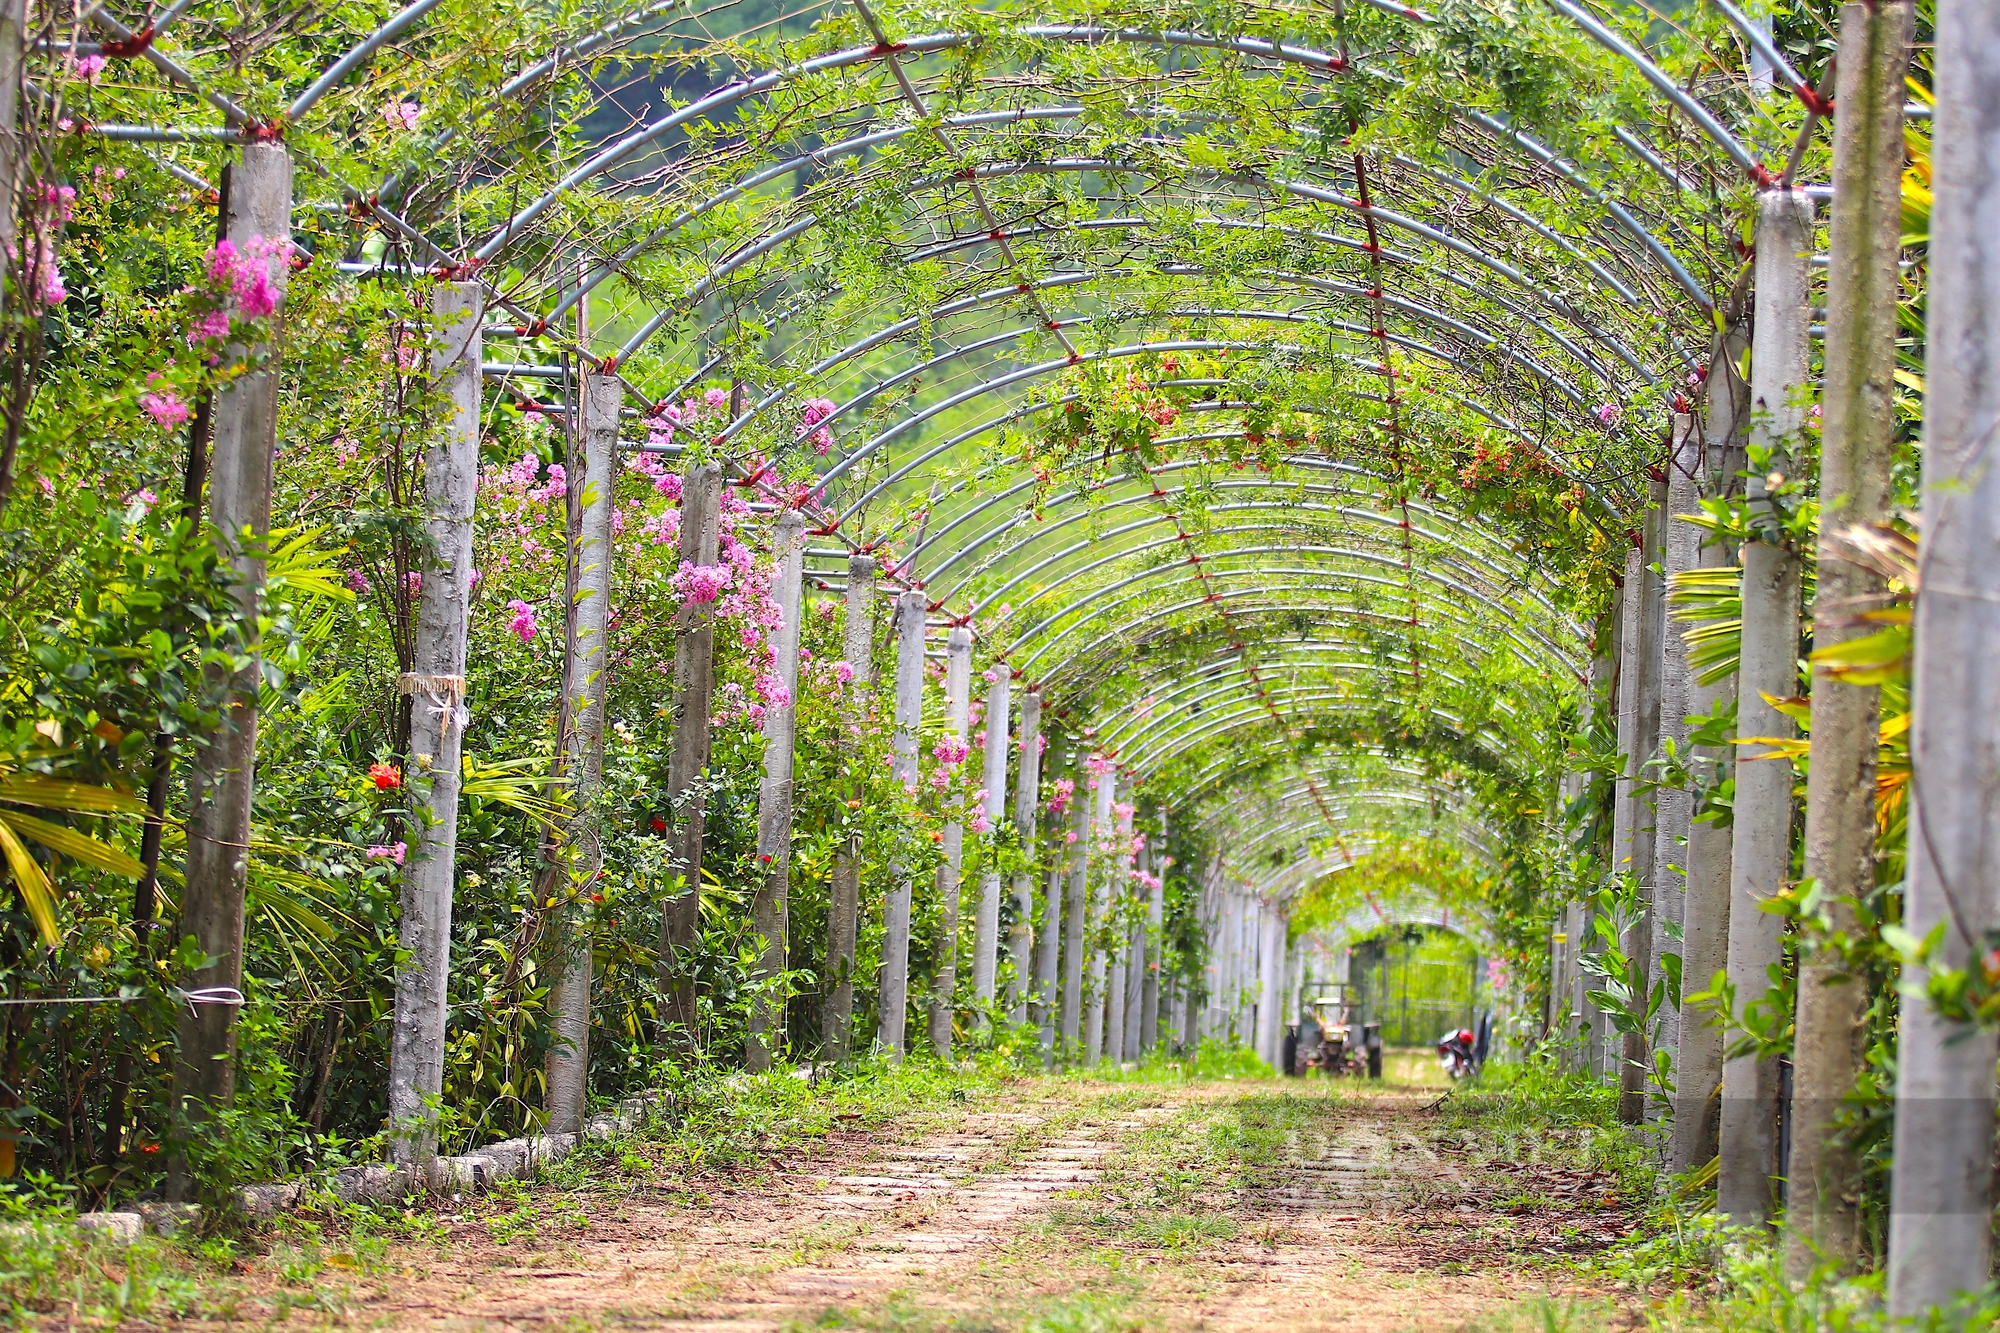 Cận cảnh khu vườn sinh thái thảo dược đẹp như tranh trên núi huyện Yên Thành - Ảnh 9.